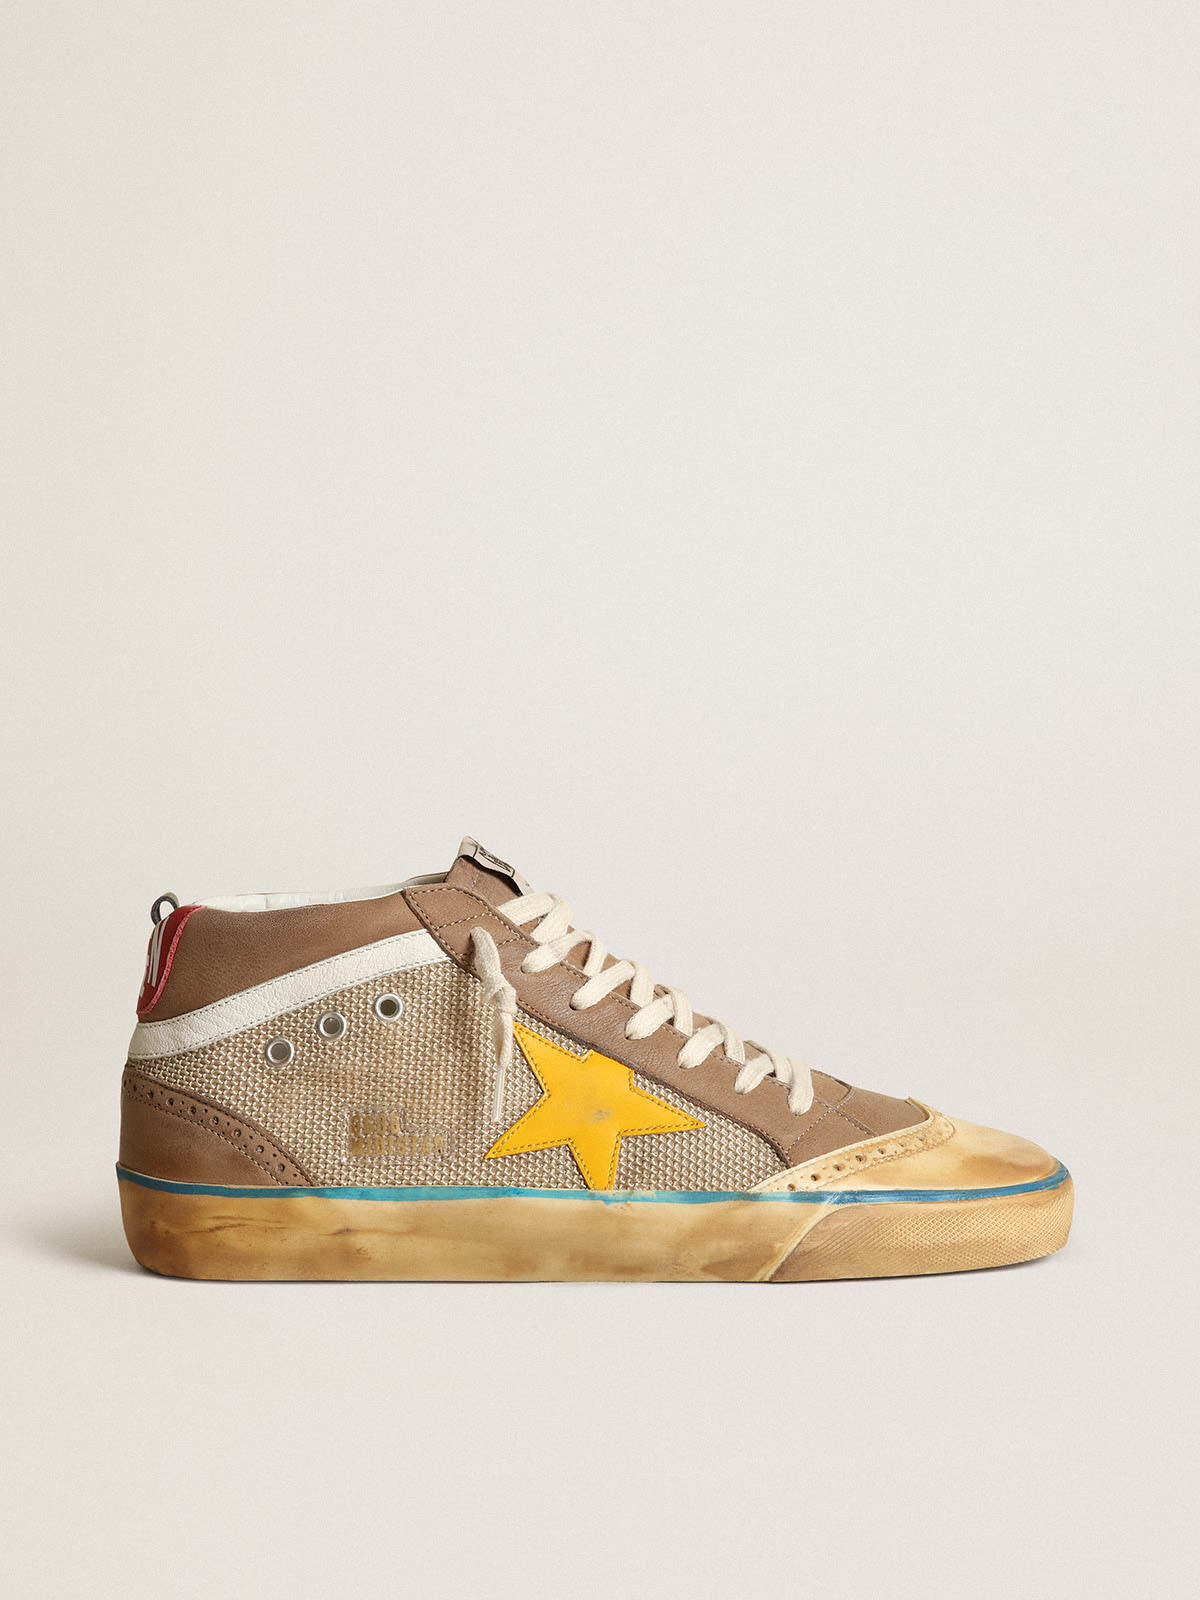 Golden Goose - Sneaker Mid Star in rete beige e nabuk color tortora con stella in pelle gialla in 